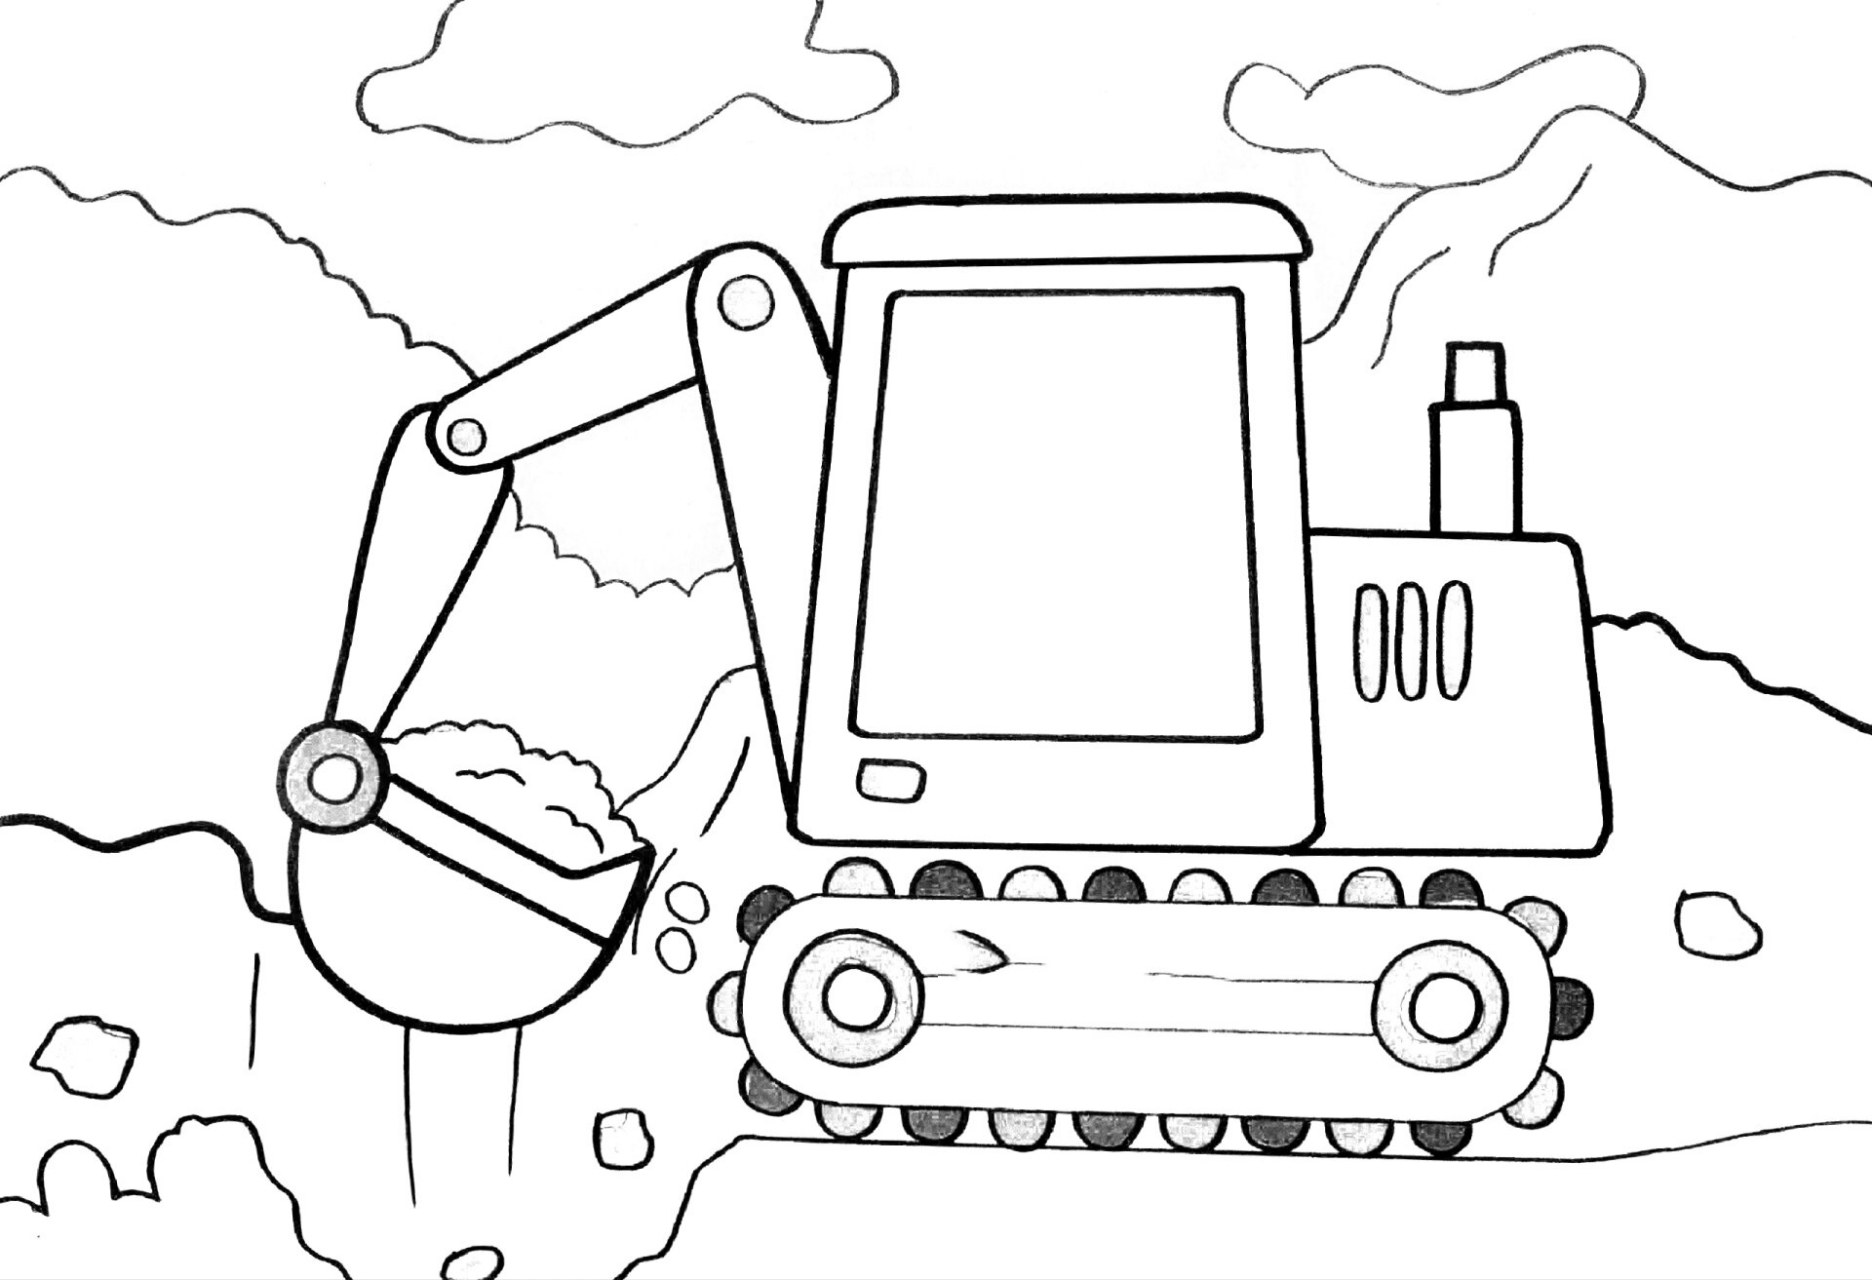 以下是一些常见的工程机械车儿童画: 1